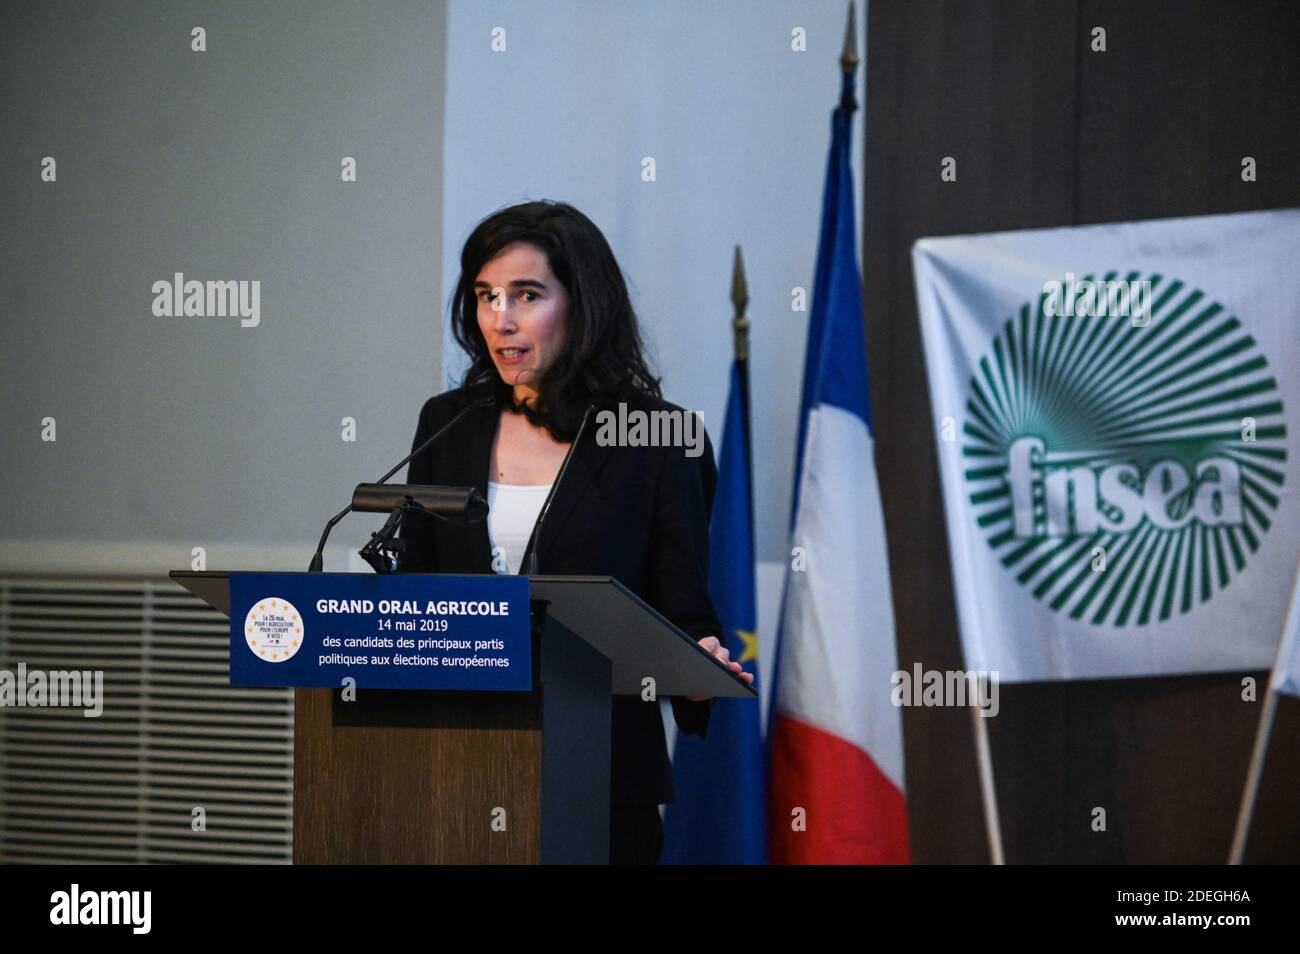 Aziliz Gouez, Kandidat für die Europawahl für die "PS-Place publique", spricht während einer Agrardebatte am 14. Mai 2019 in Paris, Frankreich. Foto von Julie Sebadelha/ABACAPRESS.COM Stockfoto